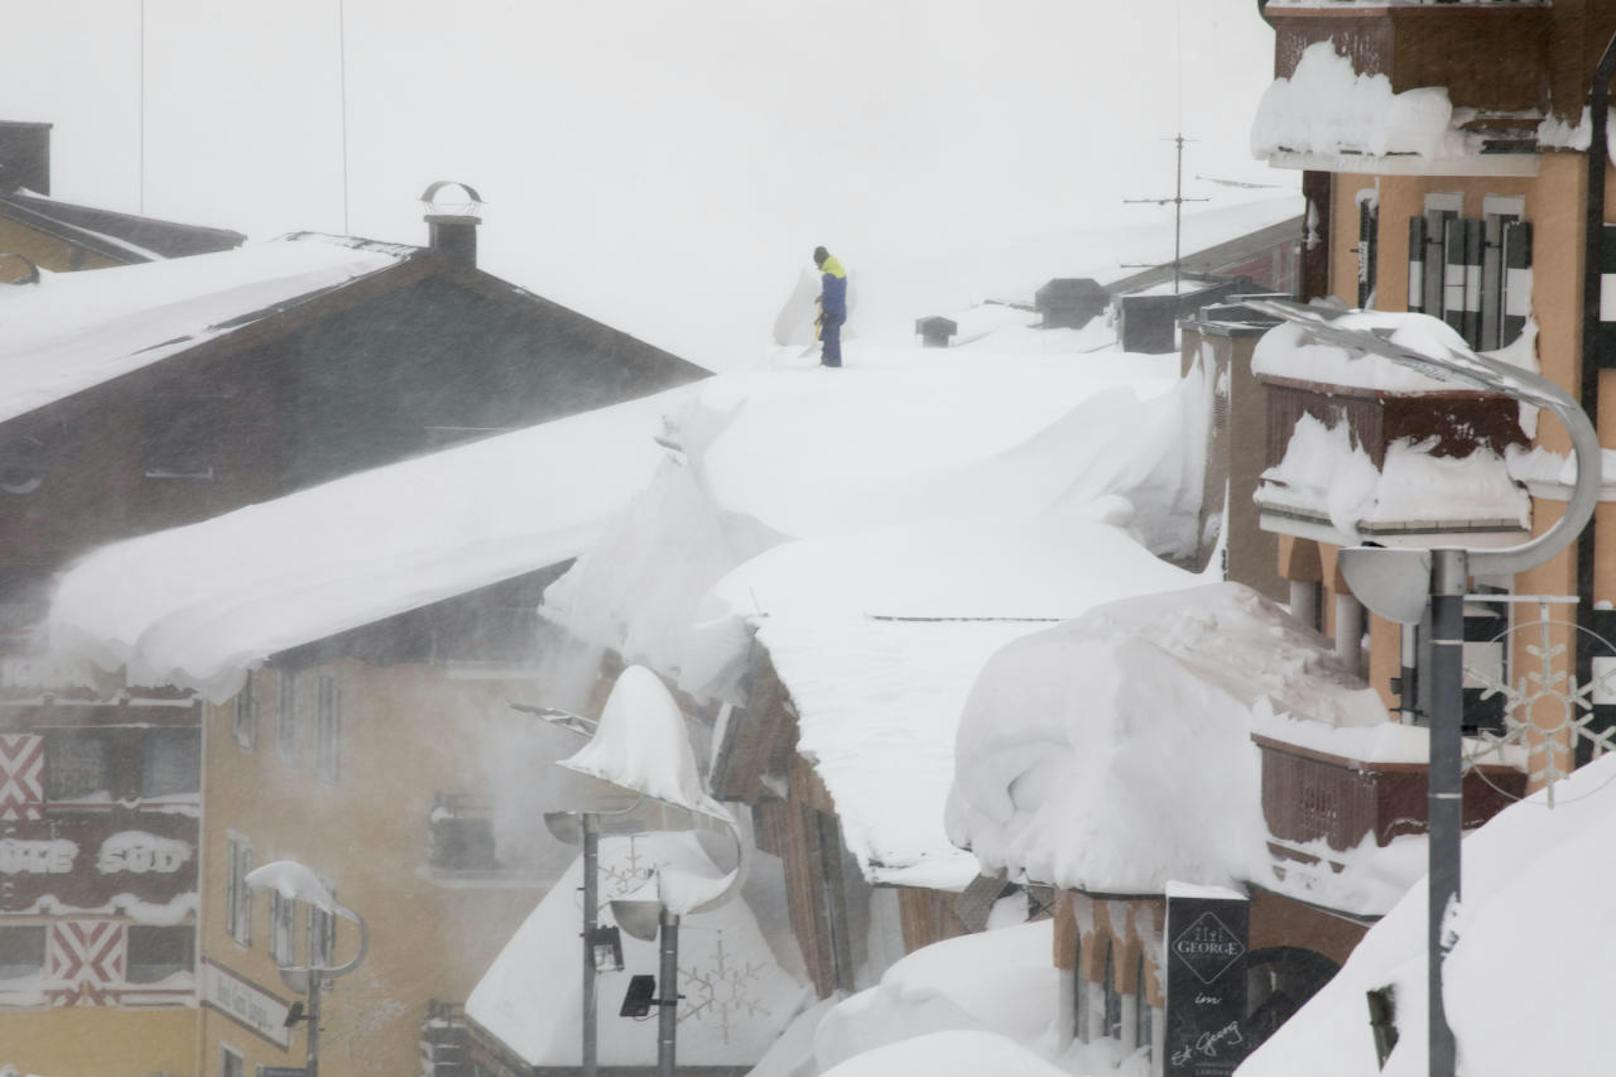 Auf den Dächern wird der Schnee herunter geschaufelt. Schwere Technik ist angerückt, um den Schnee abzutransportieren. Nach Angaben der Bewohner, kommt so ein Ereignis nur etwa alle zehn Jahre vor.